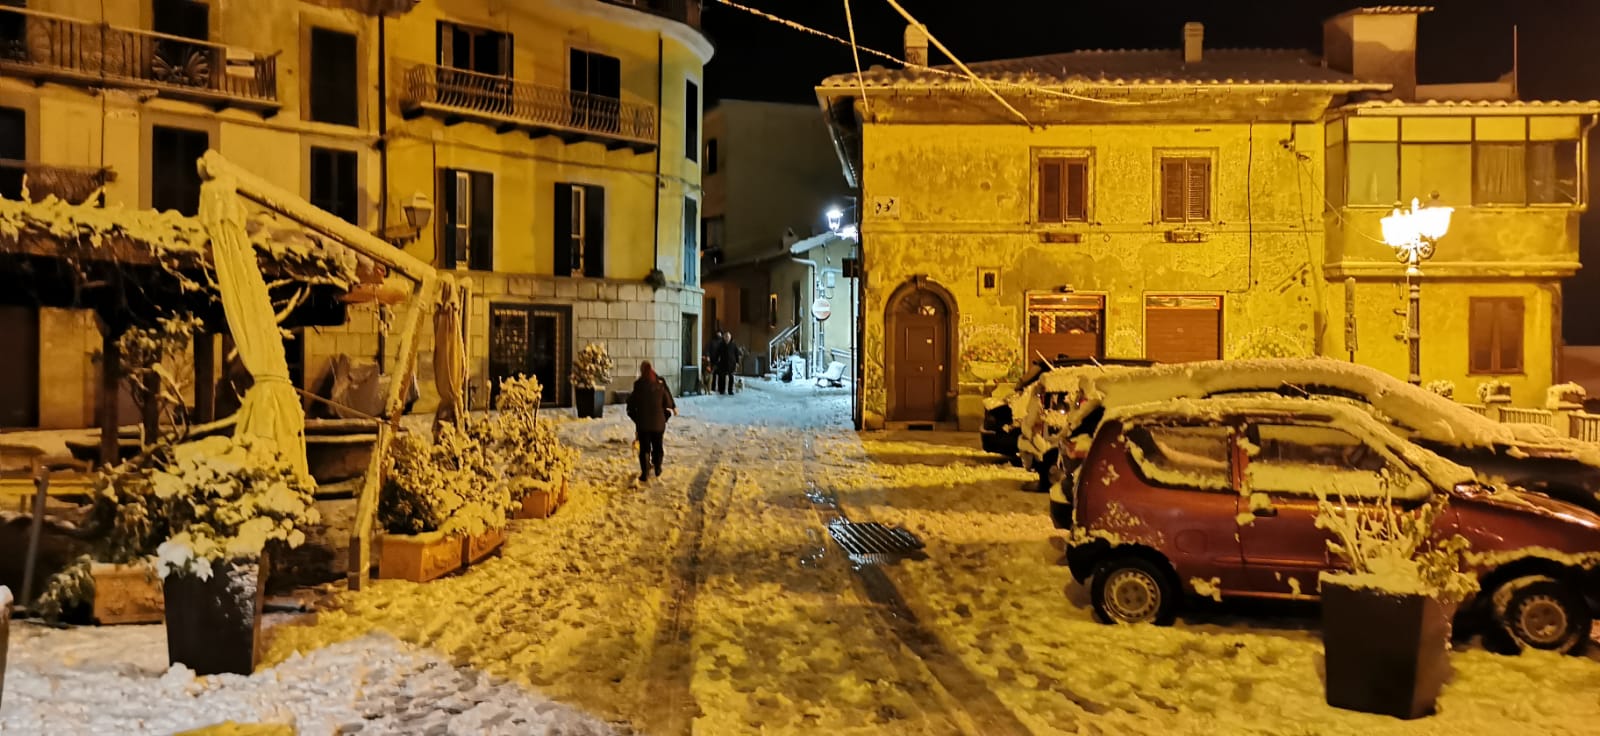 Neve a Roma: nevicata ai castelli romani, le foto più belle